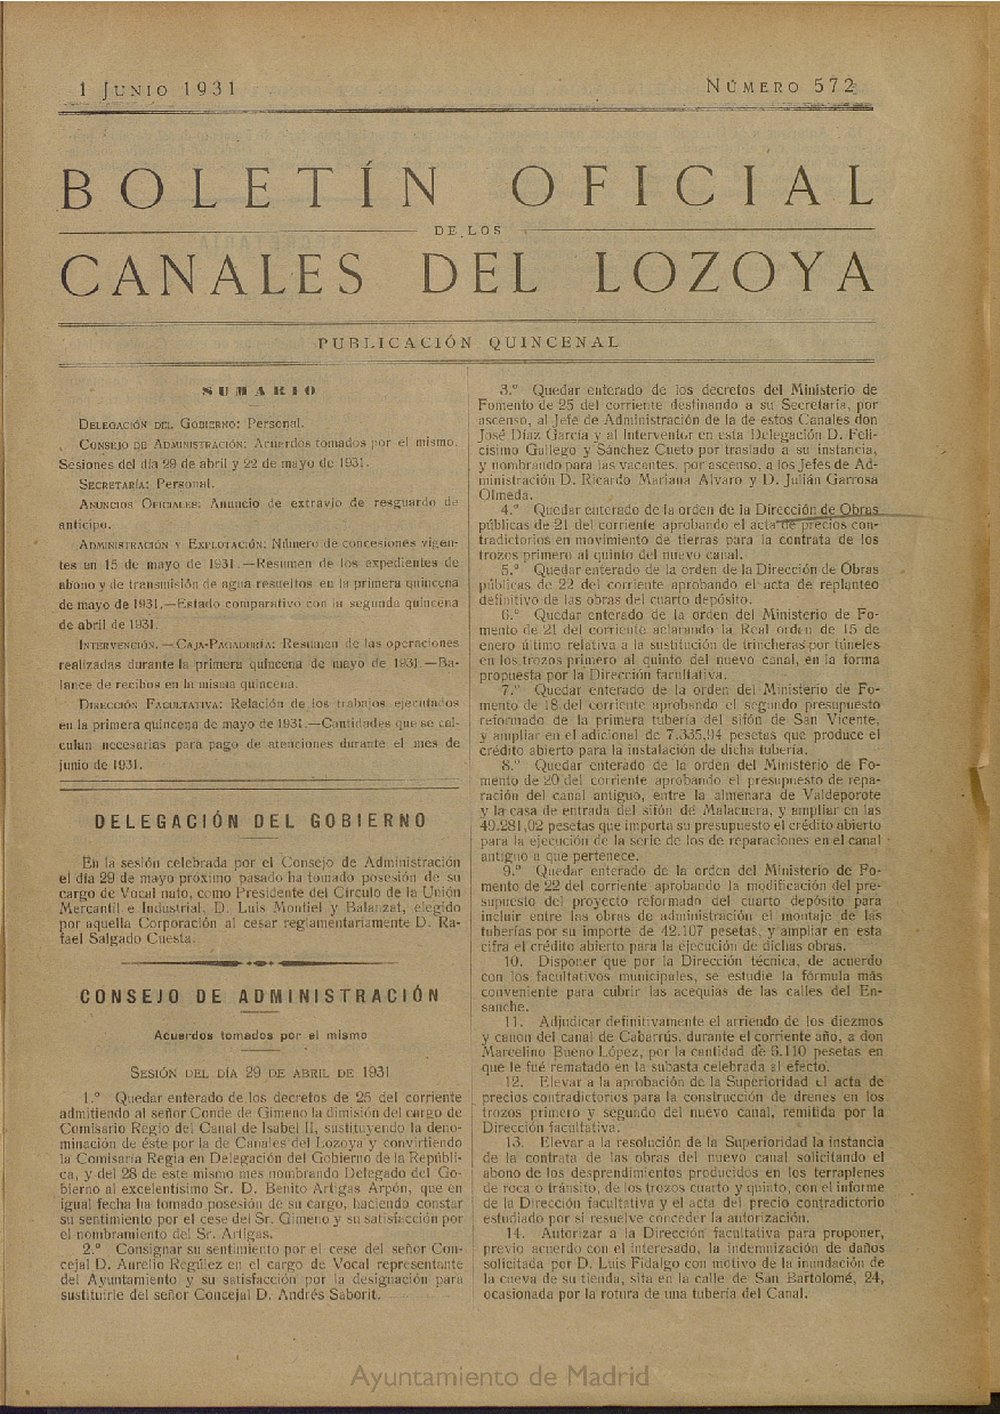 Boletín Oficial de los Canales del Lozoya del 1 de junio de 1931, nº 572